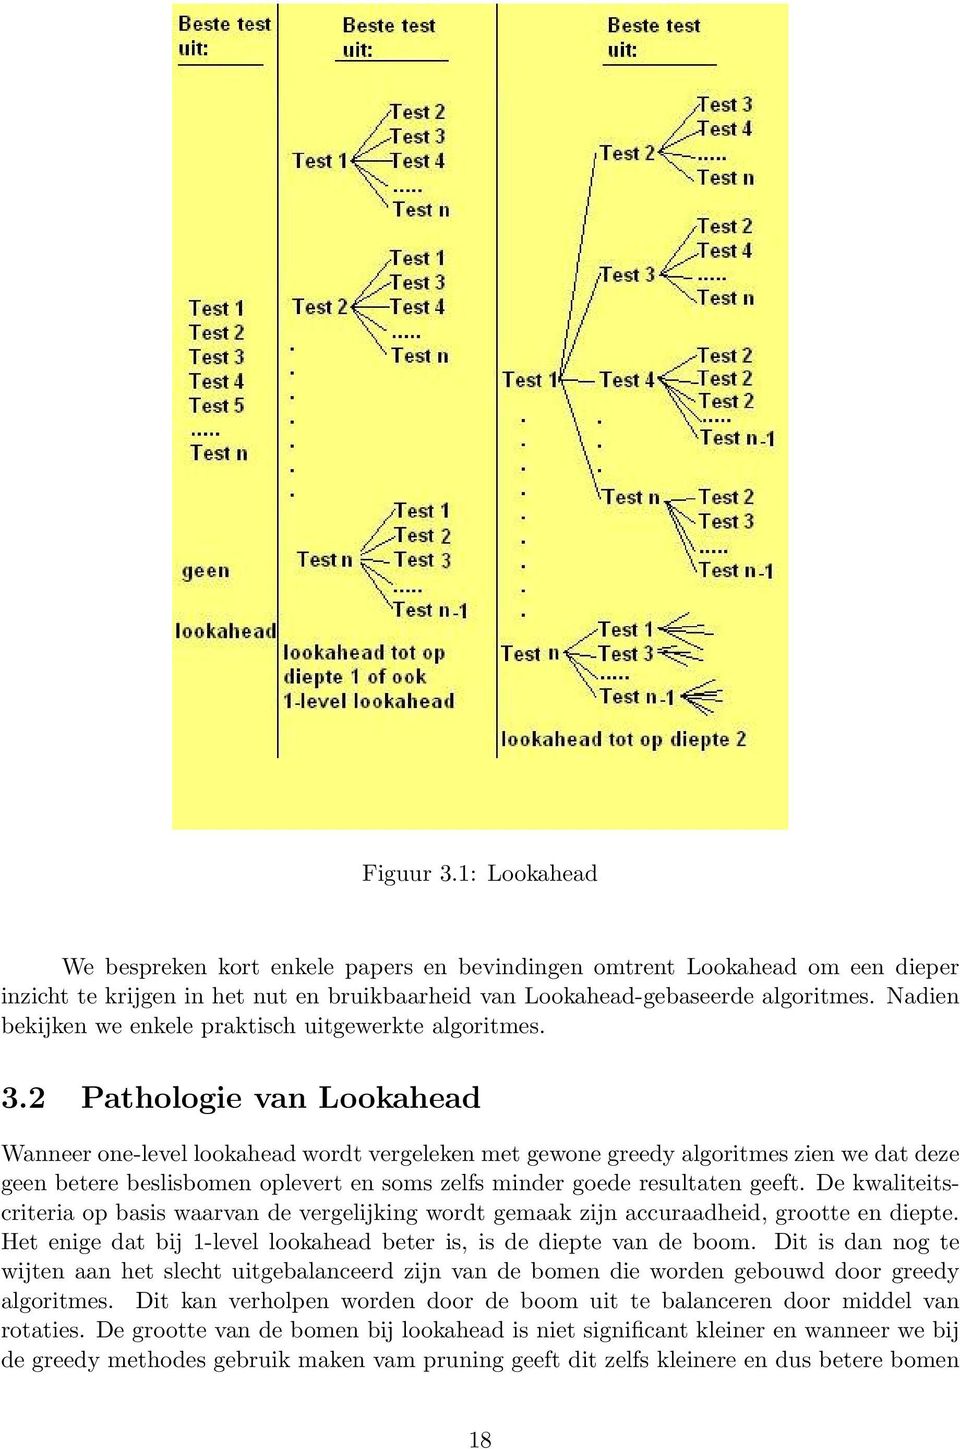 2 Pathologie van Lookahead Wanneer one-level lookahead wordt vergeleken met gewone greedy algoritmes zien we dat deze geen betere beslisbomen oplevert en soms zelfs minder goede resultaten geeft.